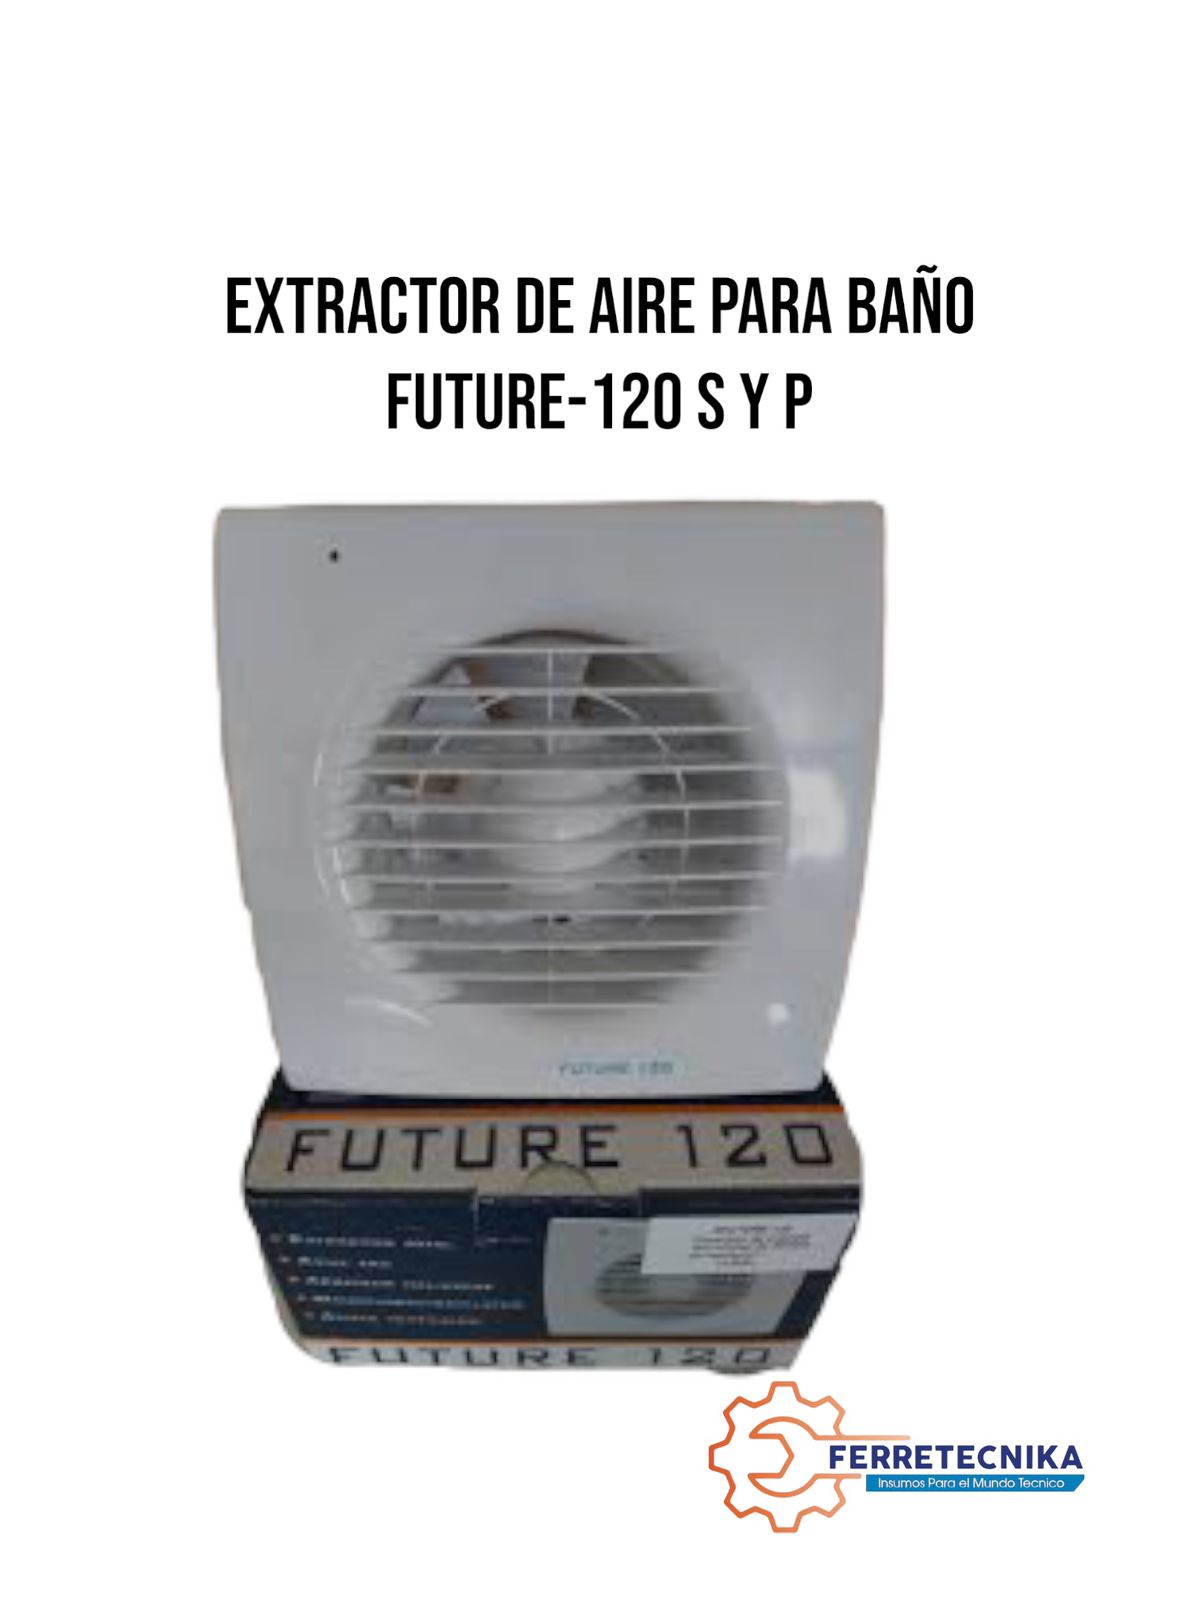 Extractor de aire para baño con temporizador FUTURE-120 CT – Tienda online  S&P Chile